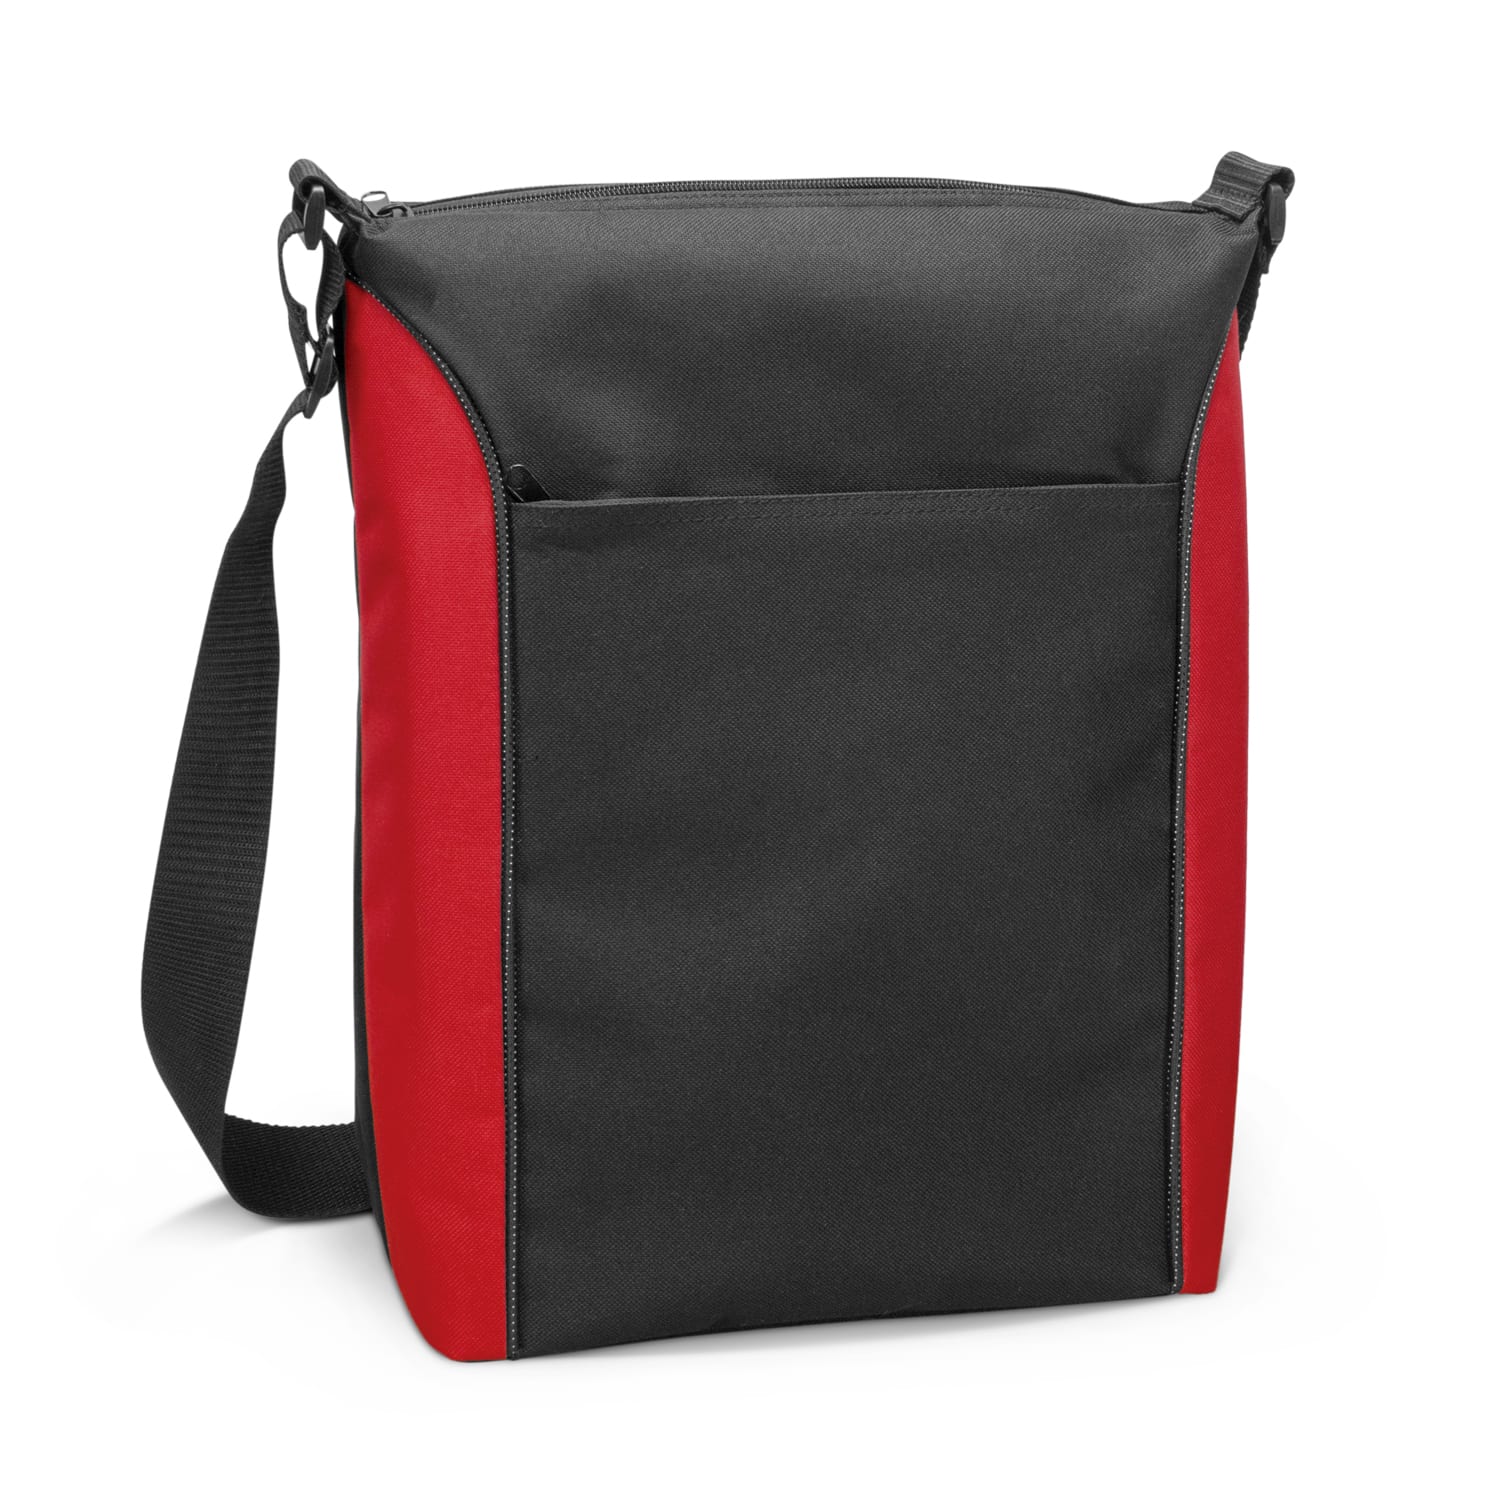 Conference Monaro Conference Cooler Bag bag